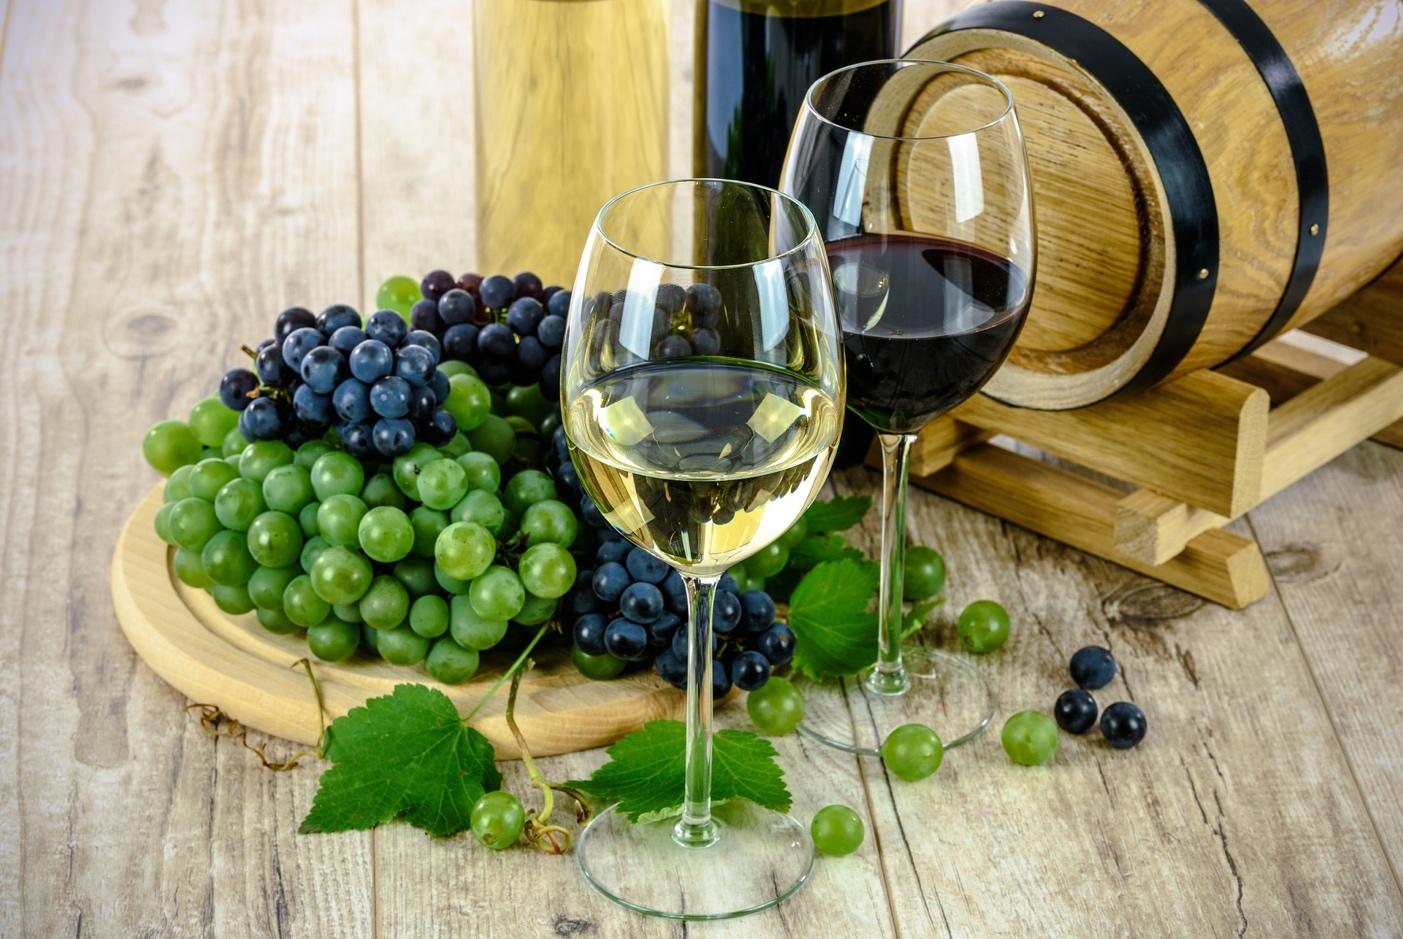 Zašto koristiti enzime u proizvodnji vina?